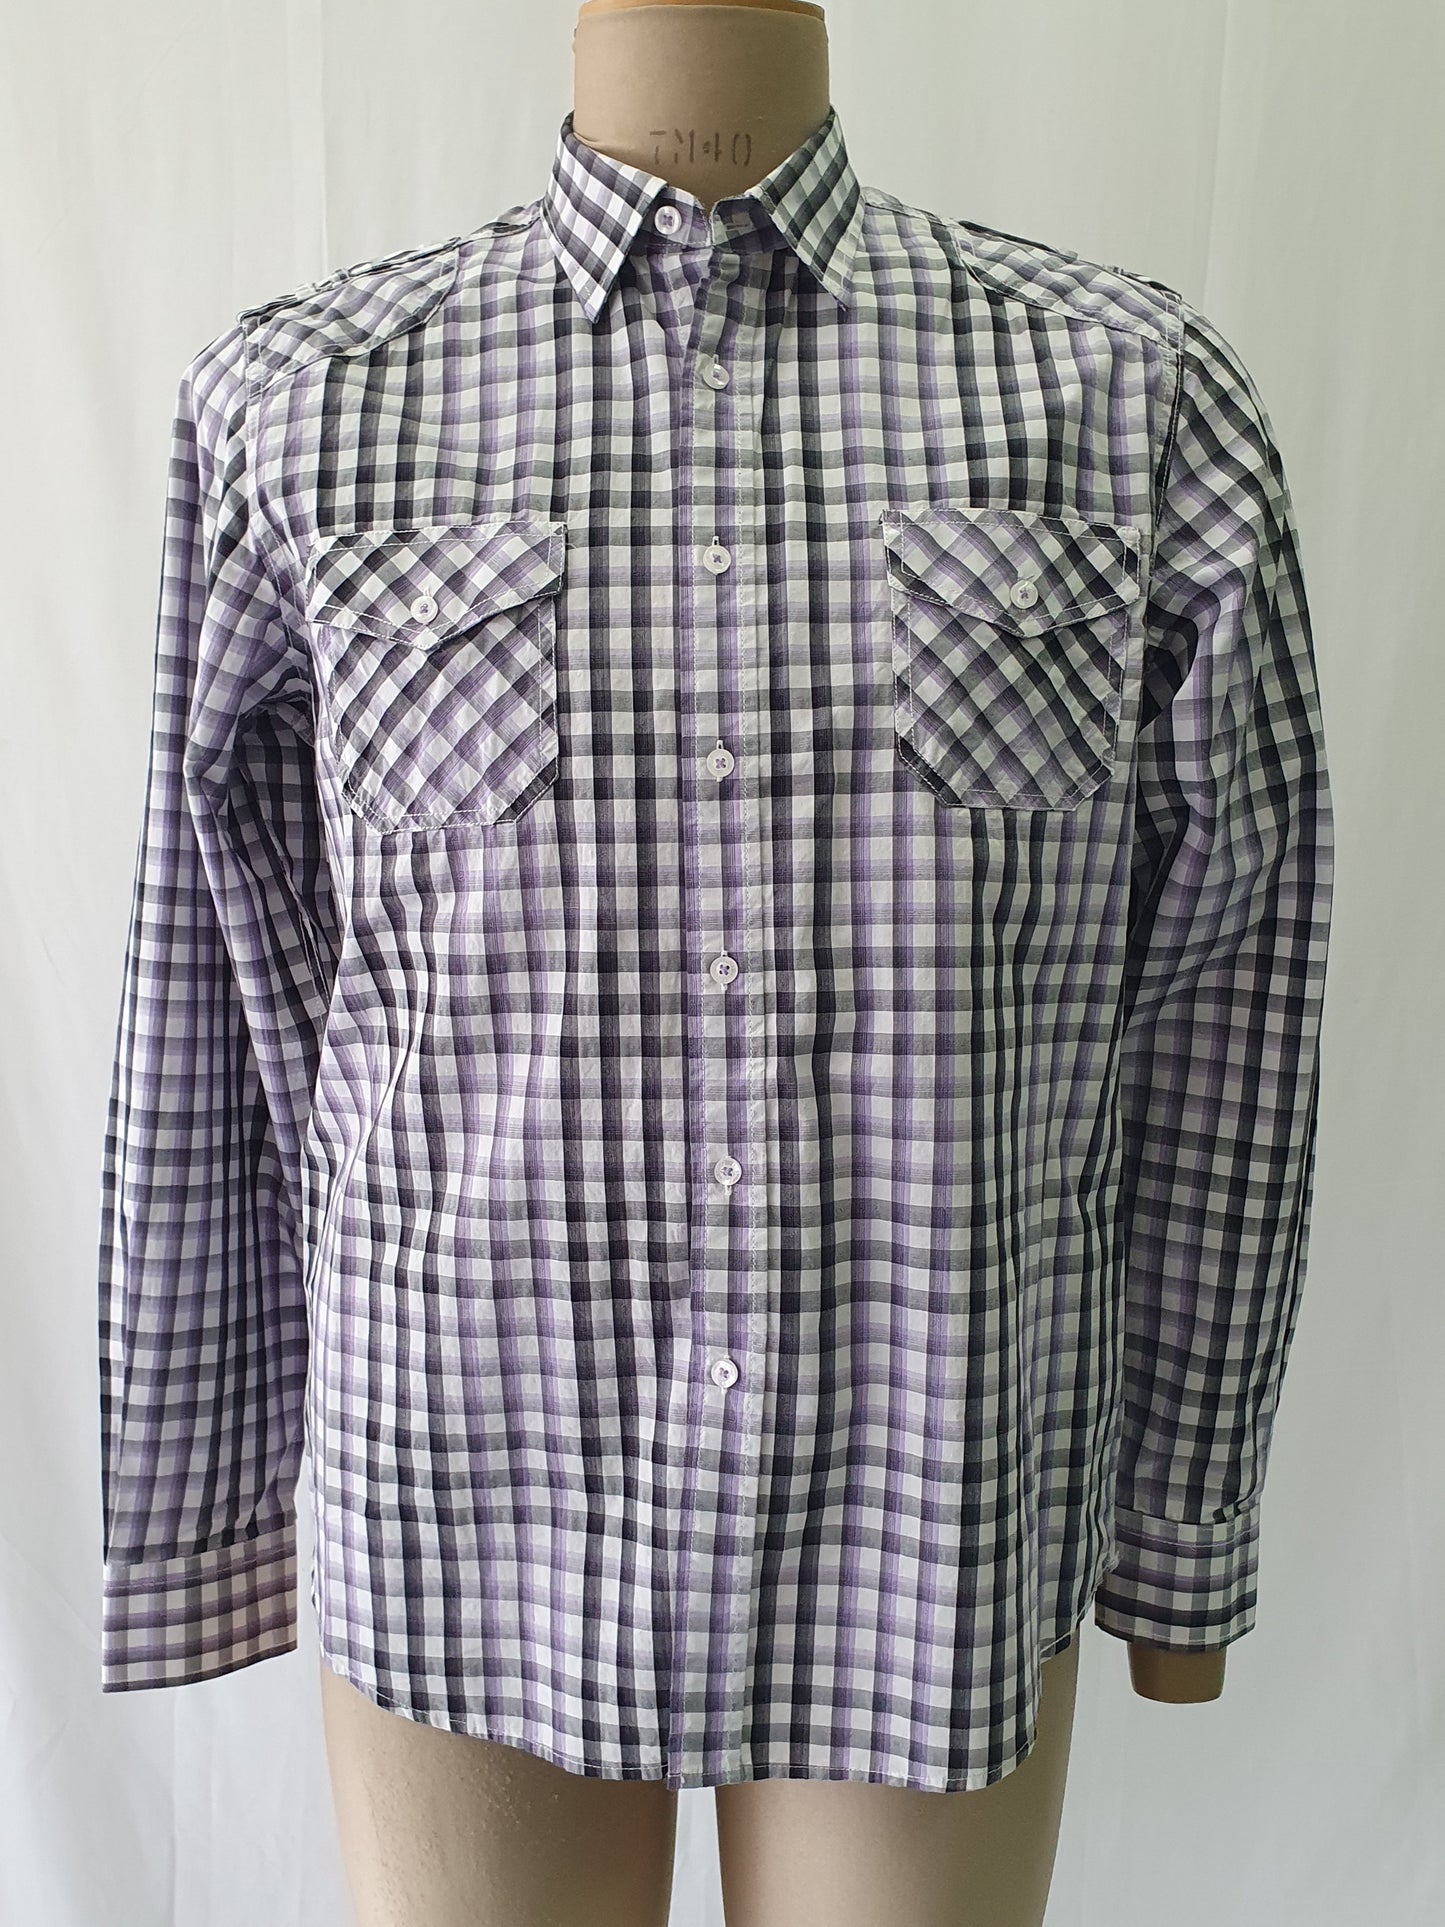 PW5873132s - Pelaco Purple & Black check casual shirt - Slim Fit